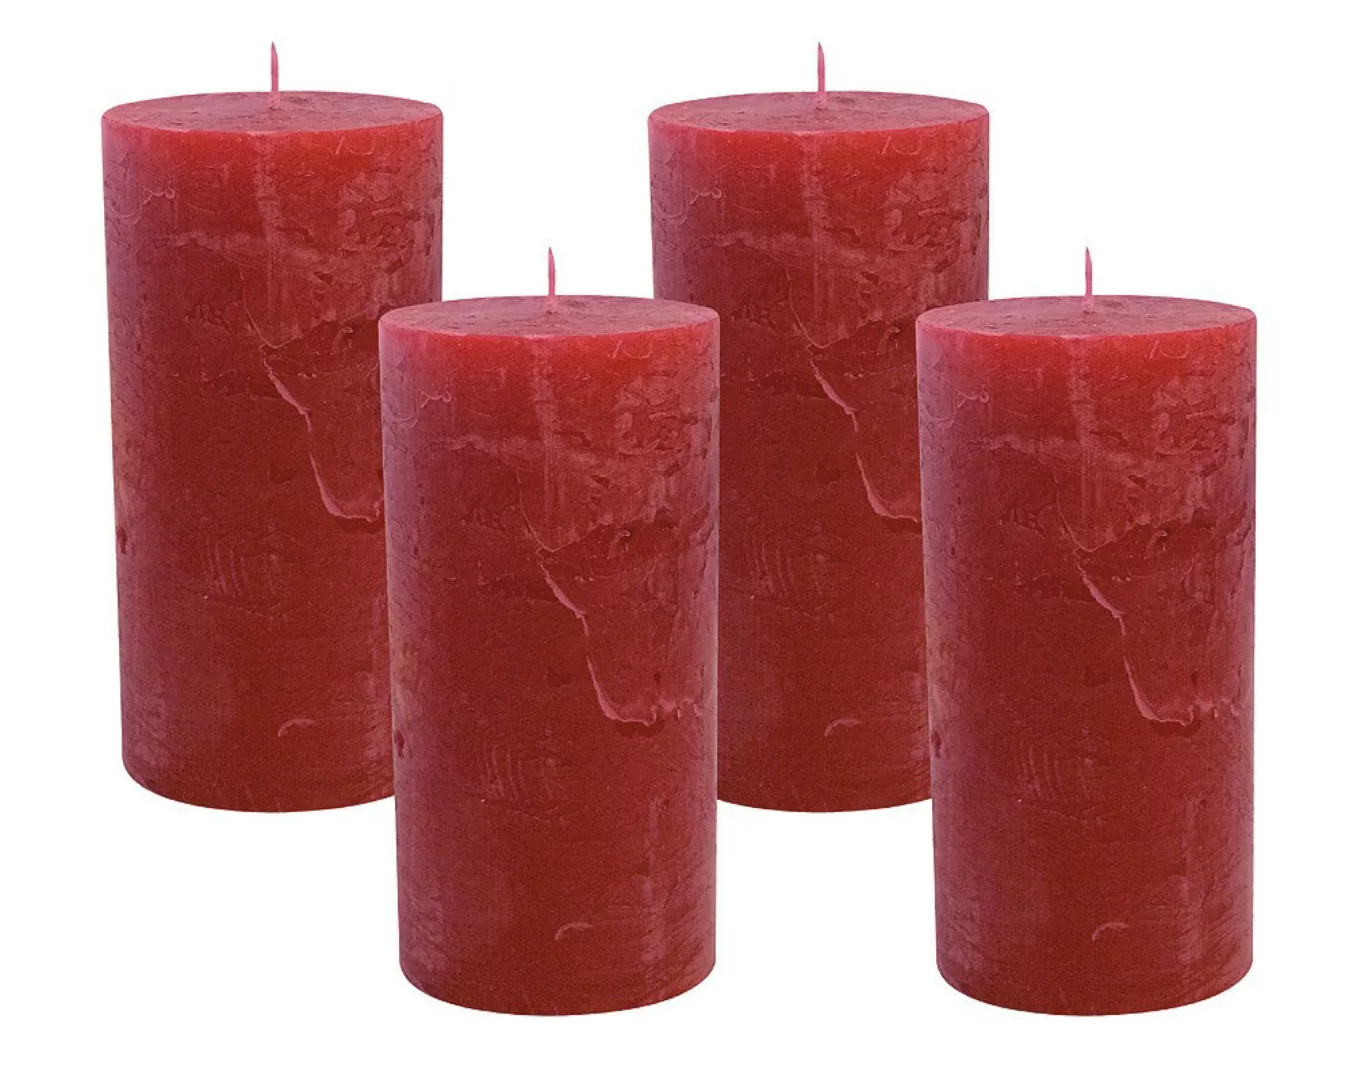 4 Rustic Stumpenkerzen Premium Kerze Rot 6x12cm - 45 Std Brenndauer günstig online kaufen